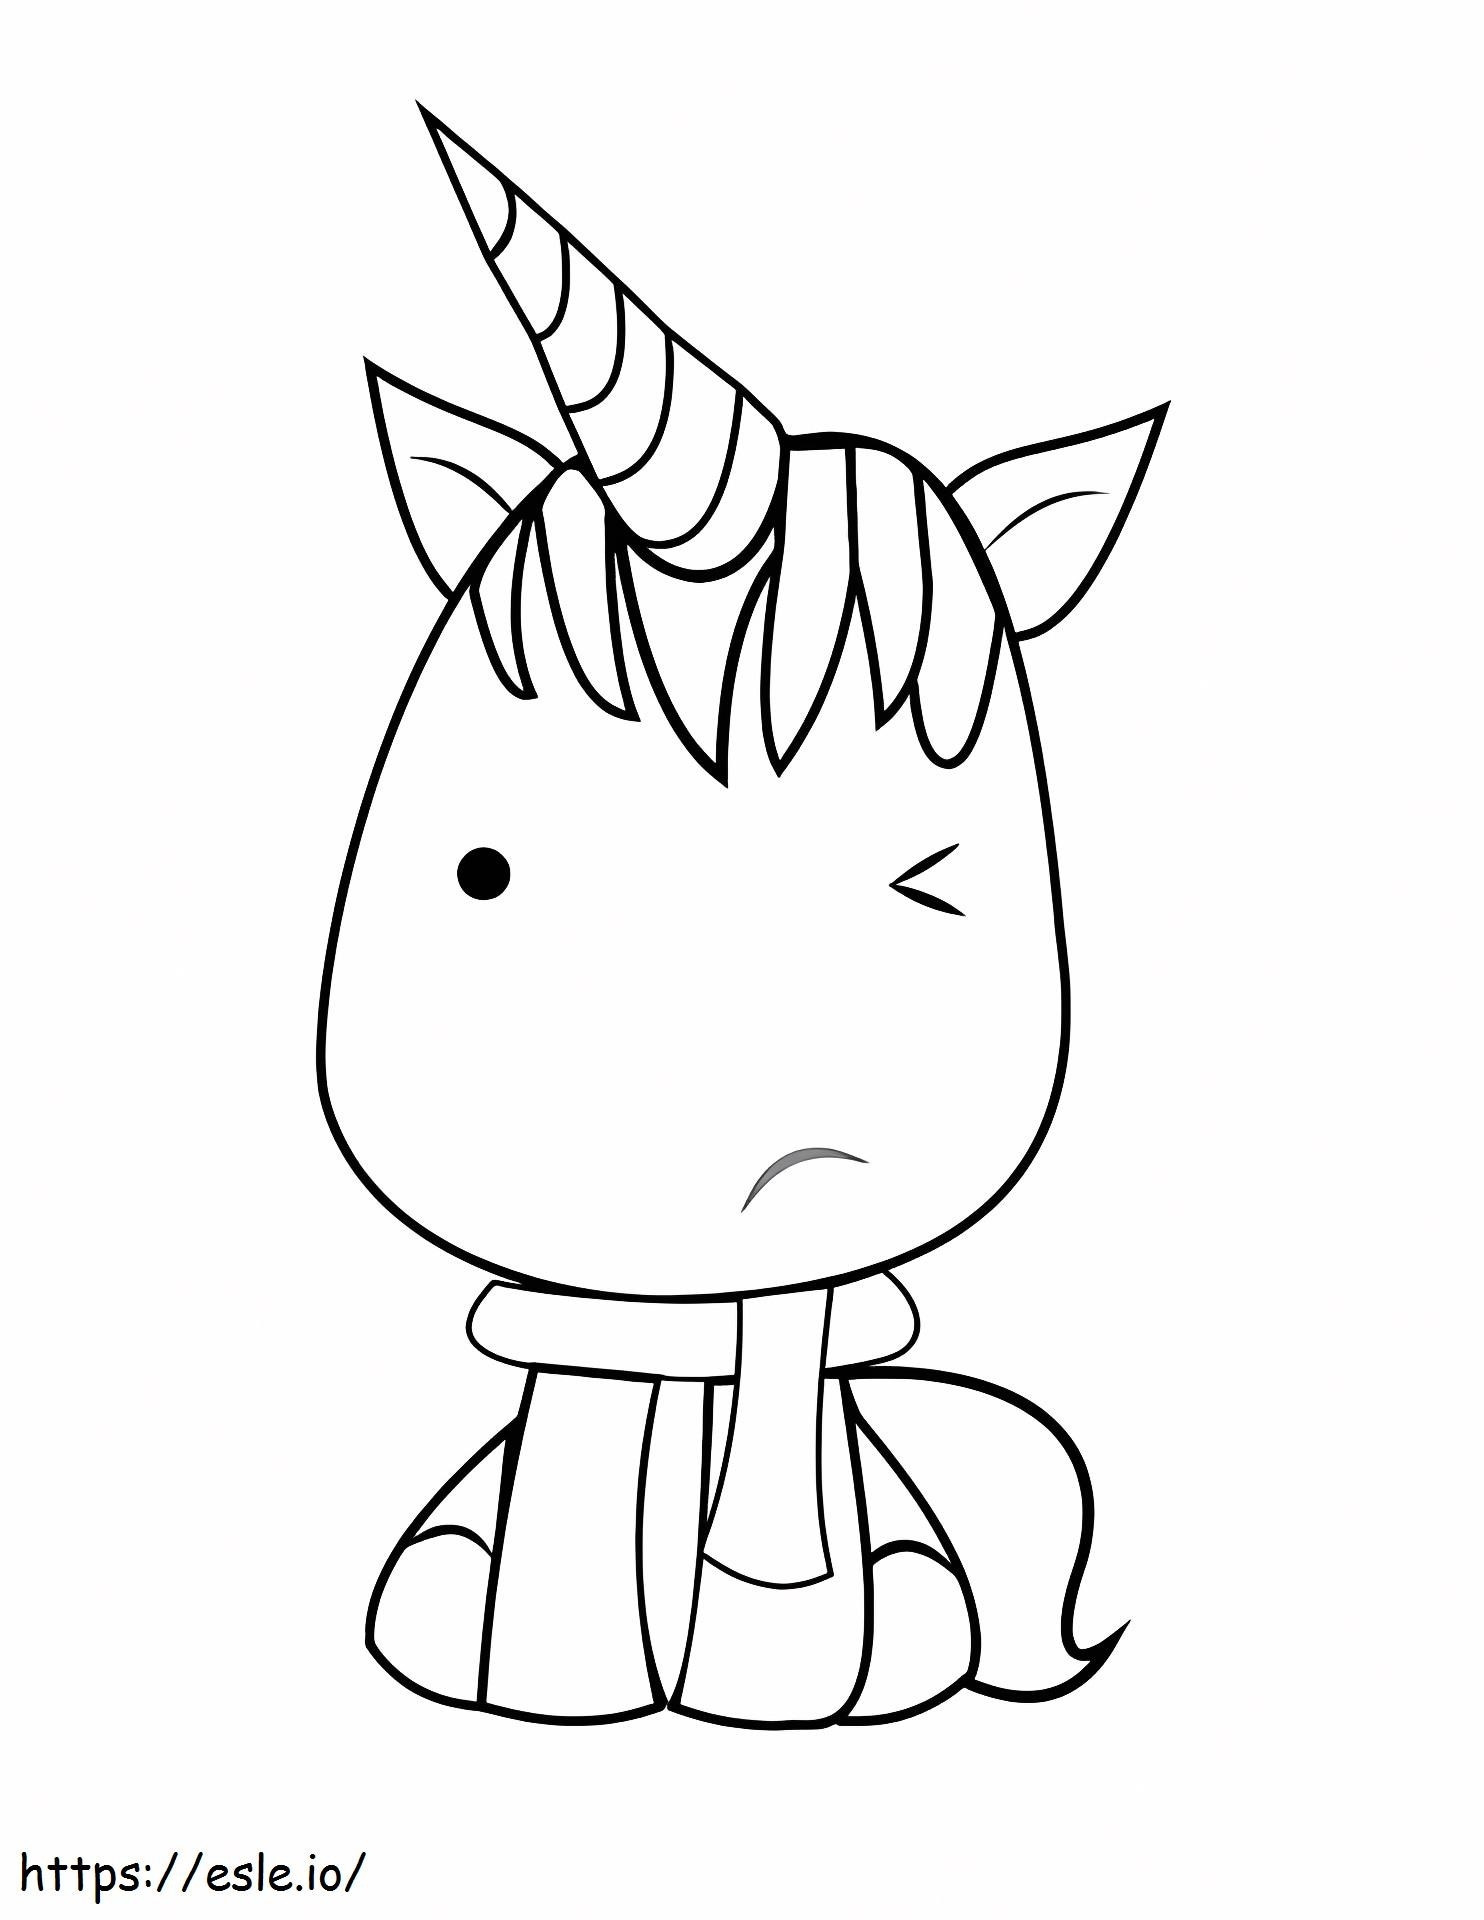 1528876499Kawaii Unicorn kifestő